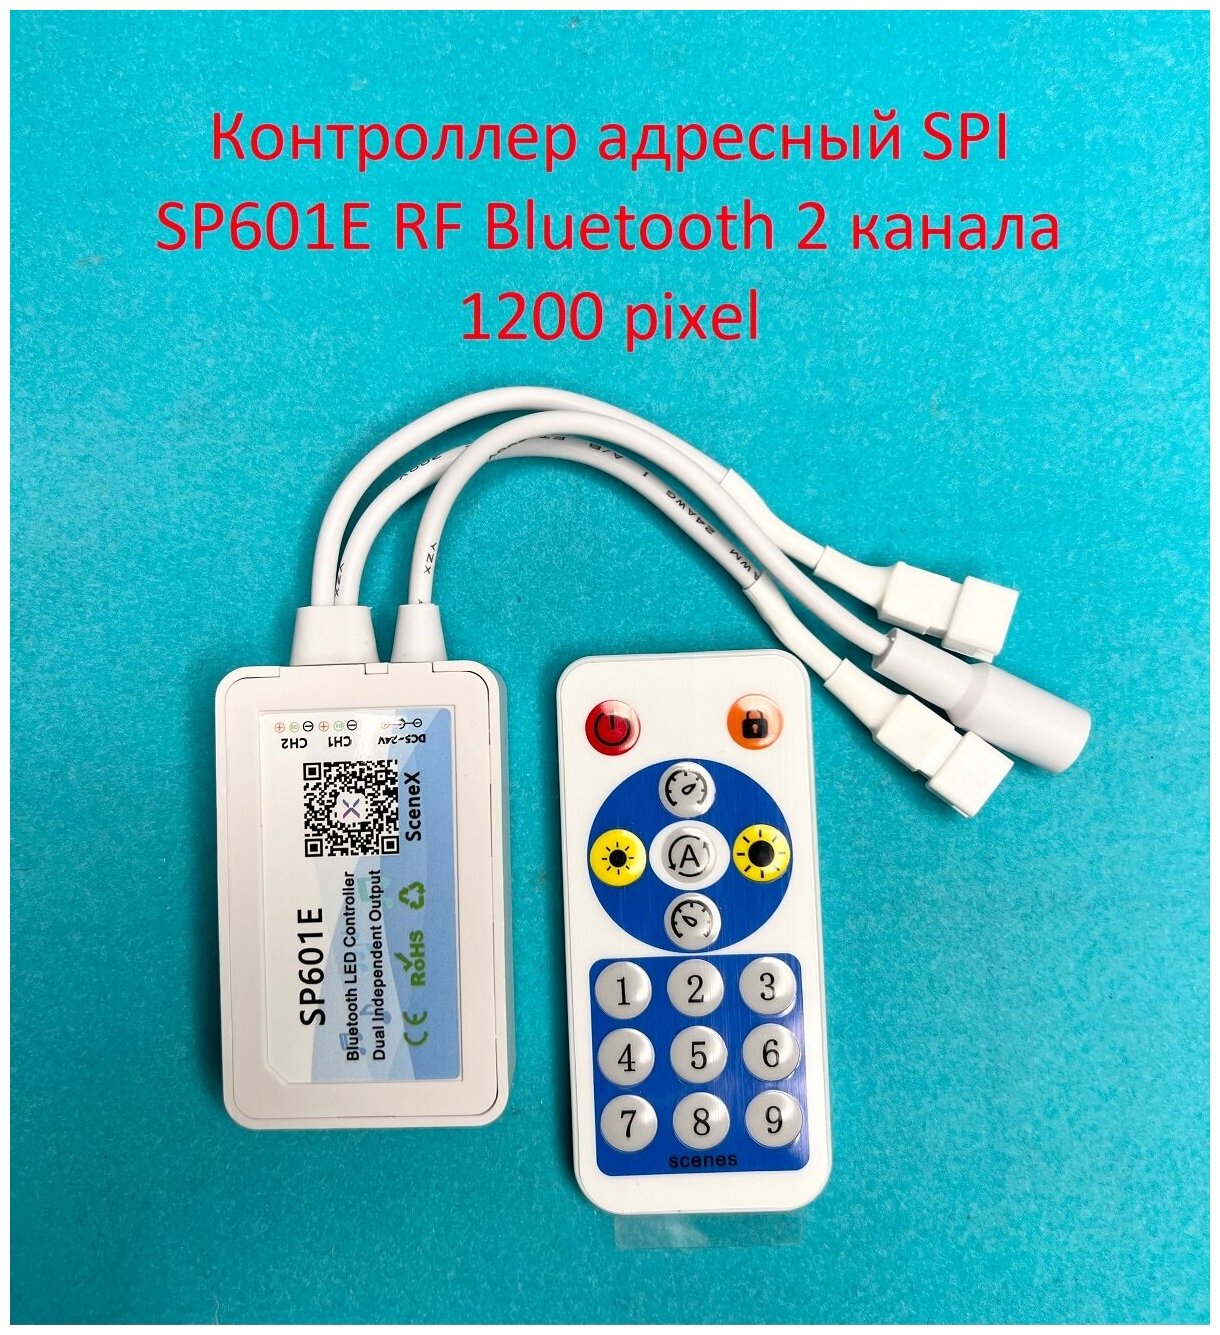 Контроллер адресный SPI SP601E Bluetooth RF 16 кнопок, 2 канала, 5-24v, 1200 пикселей